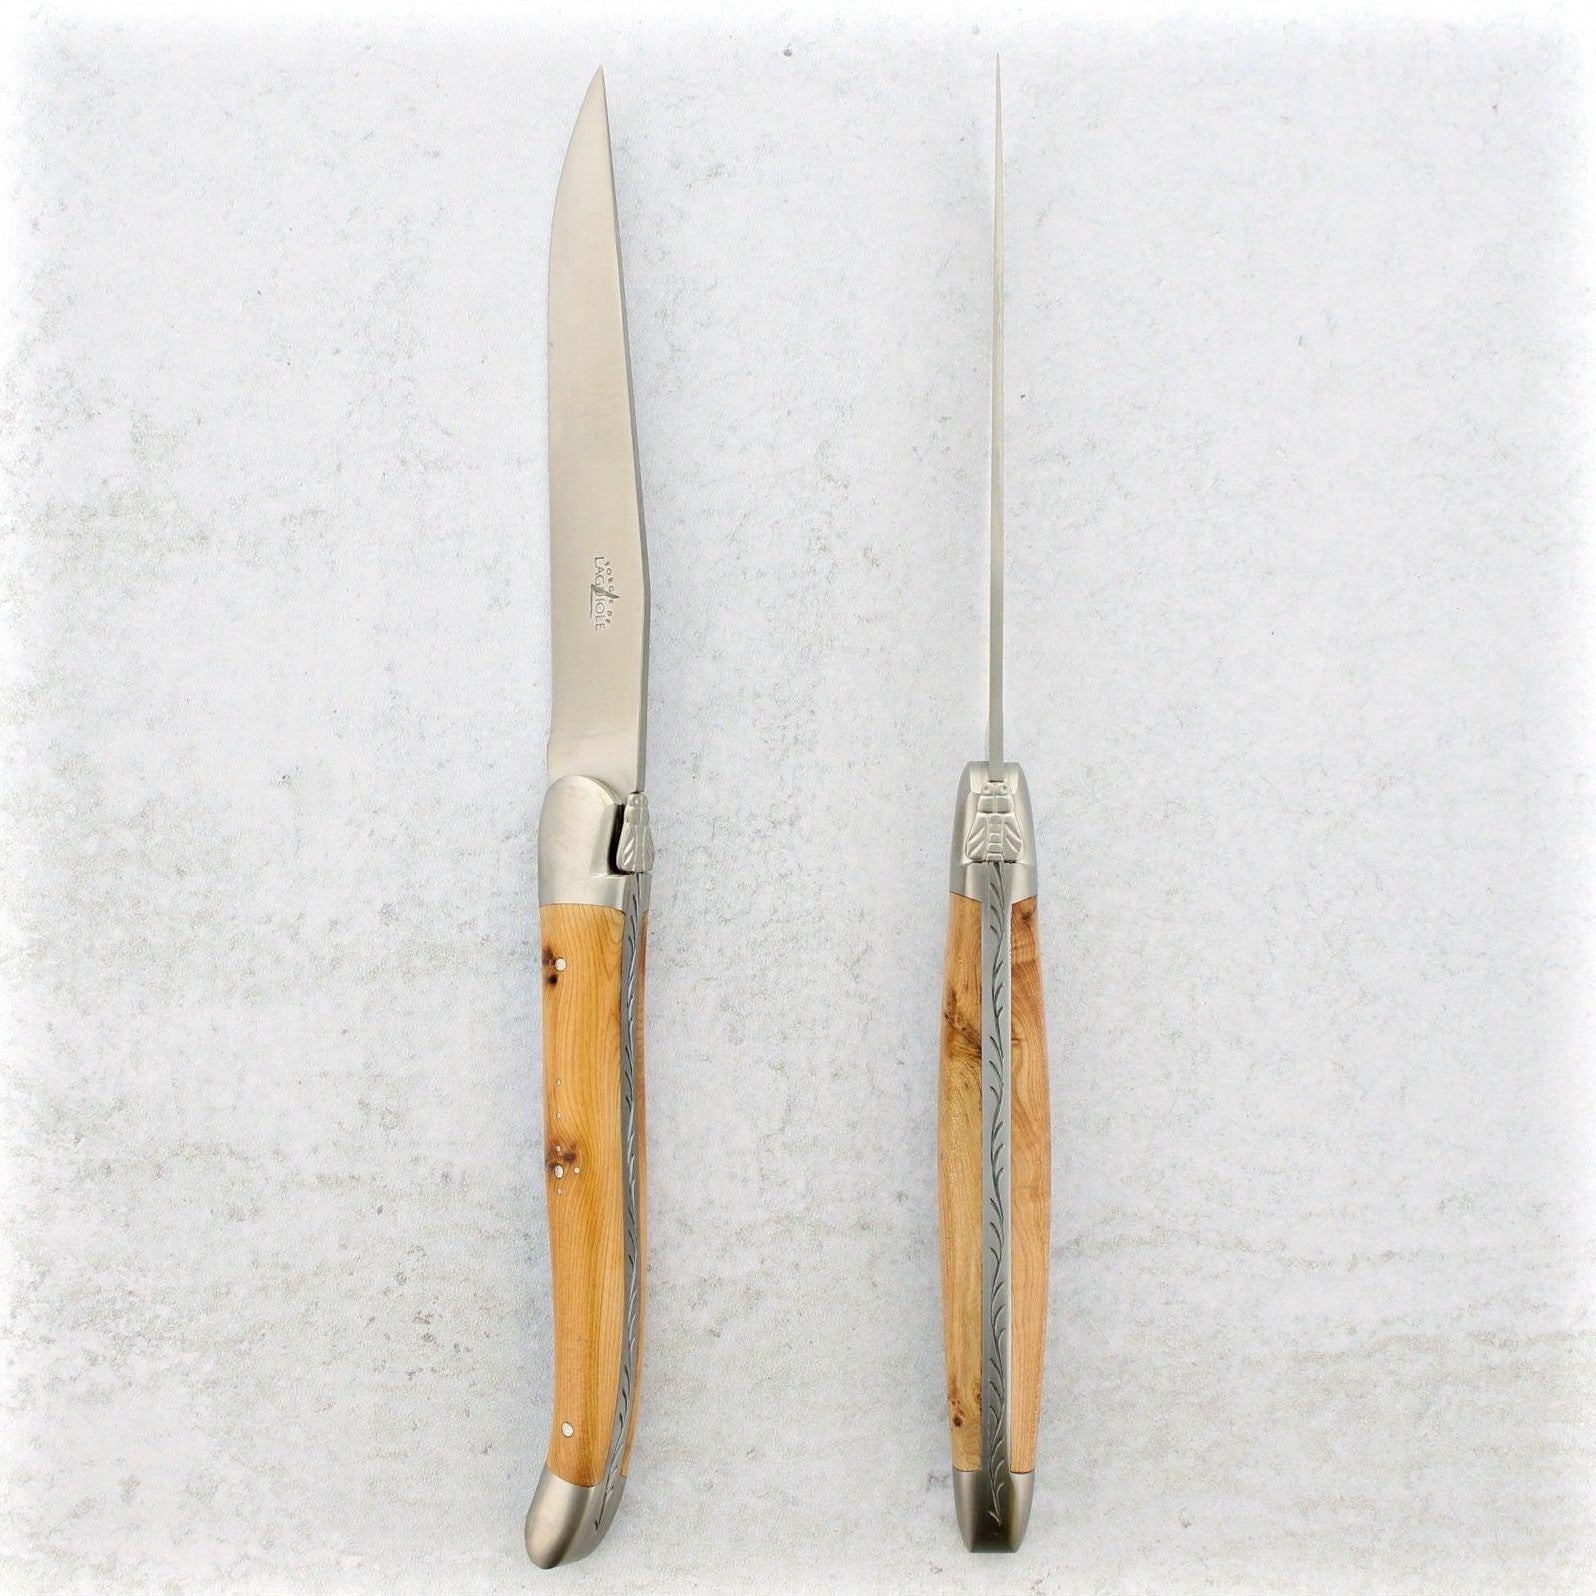 https://www.laguiole-imports.com/cdn/shop/products/Forge-de-Laguiole-Juniper-Wood-Steak-Knives-Brushed-Forge-de-Laguiole-2.jpg?v=1674998991